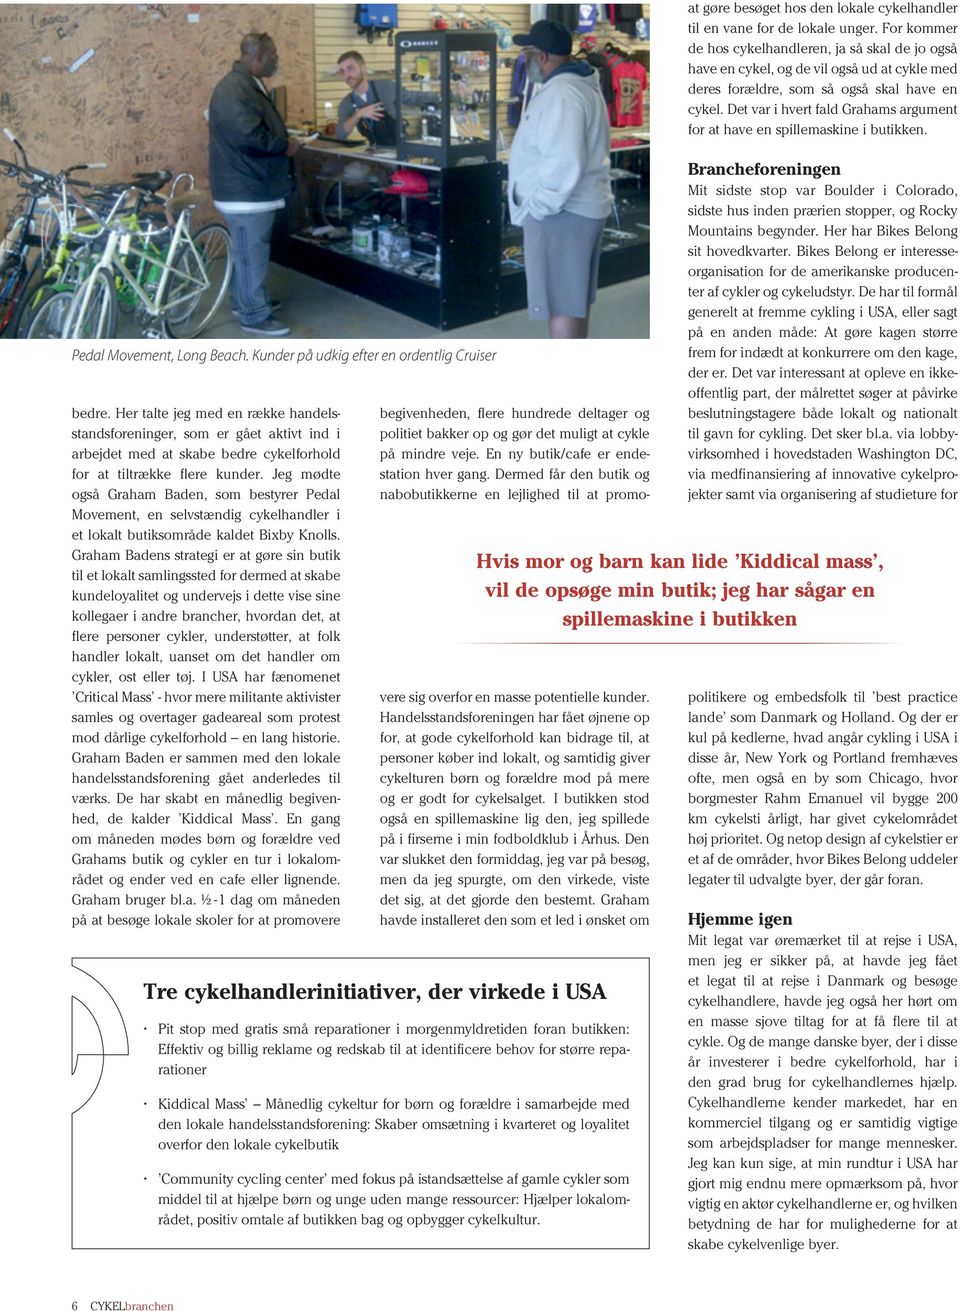 Jeg mødte også Graham Baden, som bestyrer Pedal Movement, en selvstændig cykelhandler i et lokalt butiksområde kaldet Bixby Knolls.